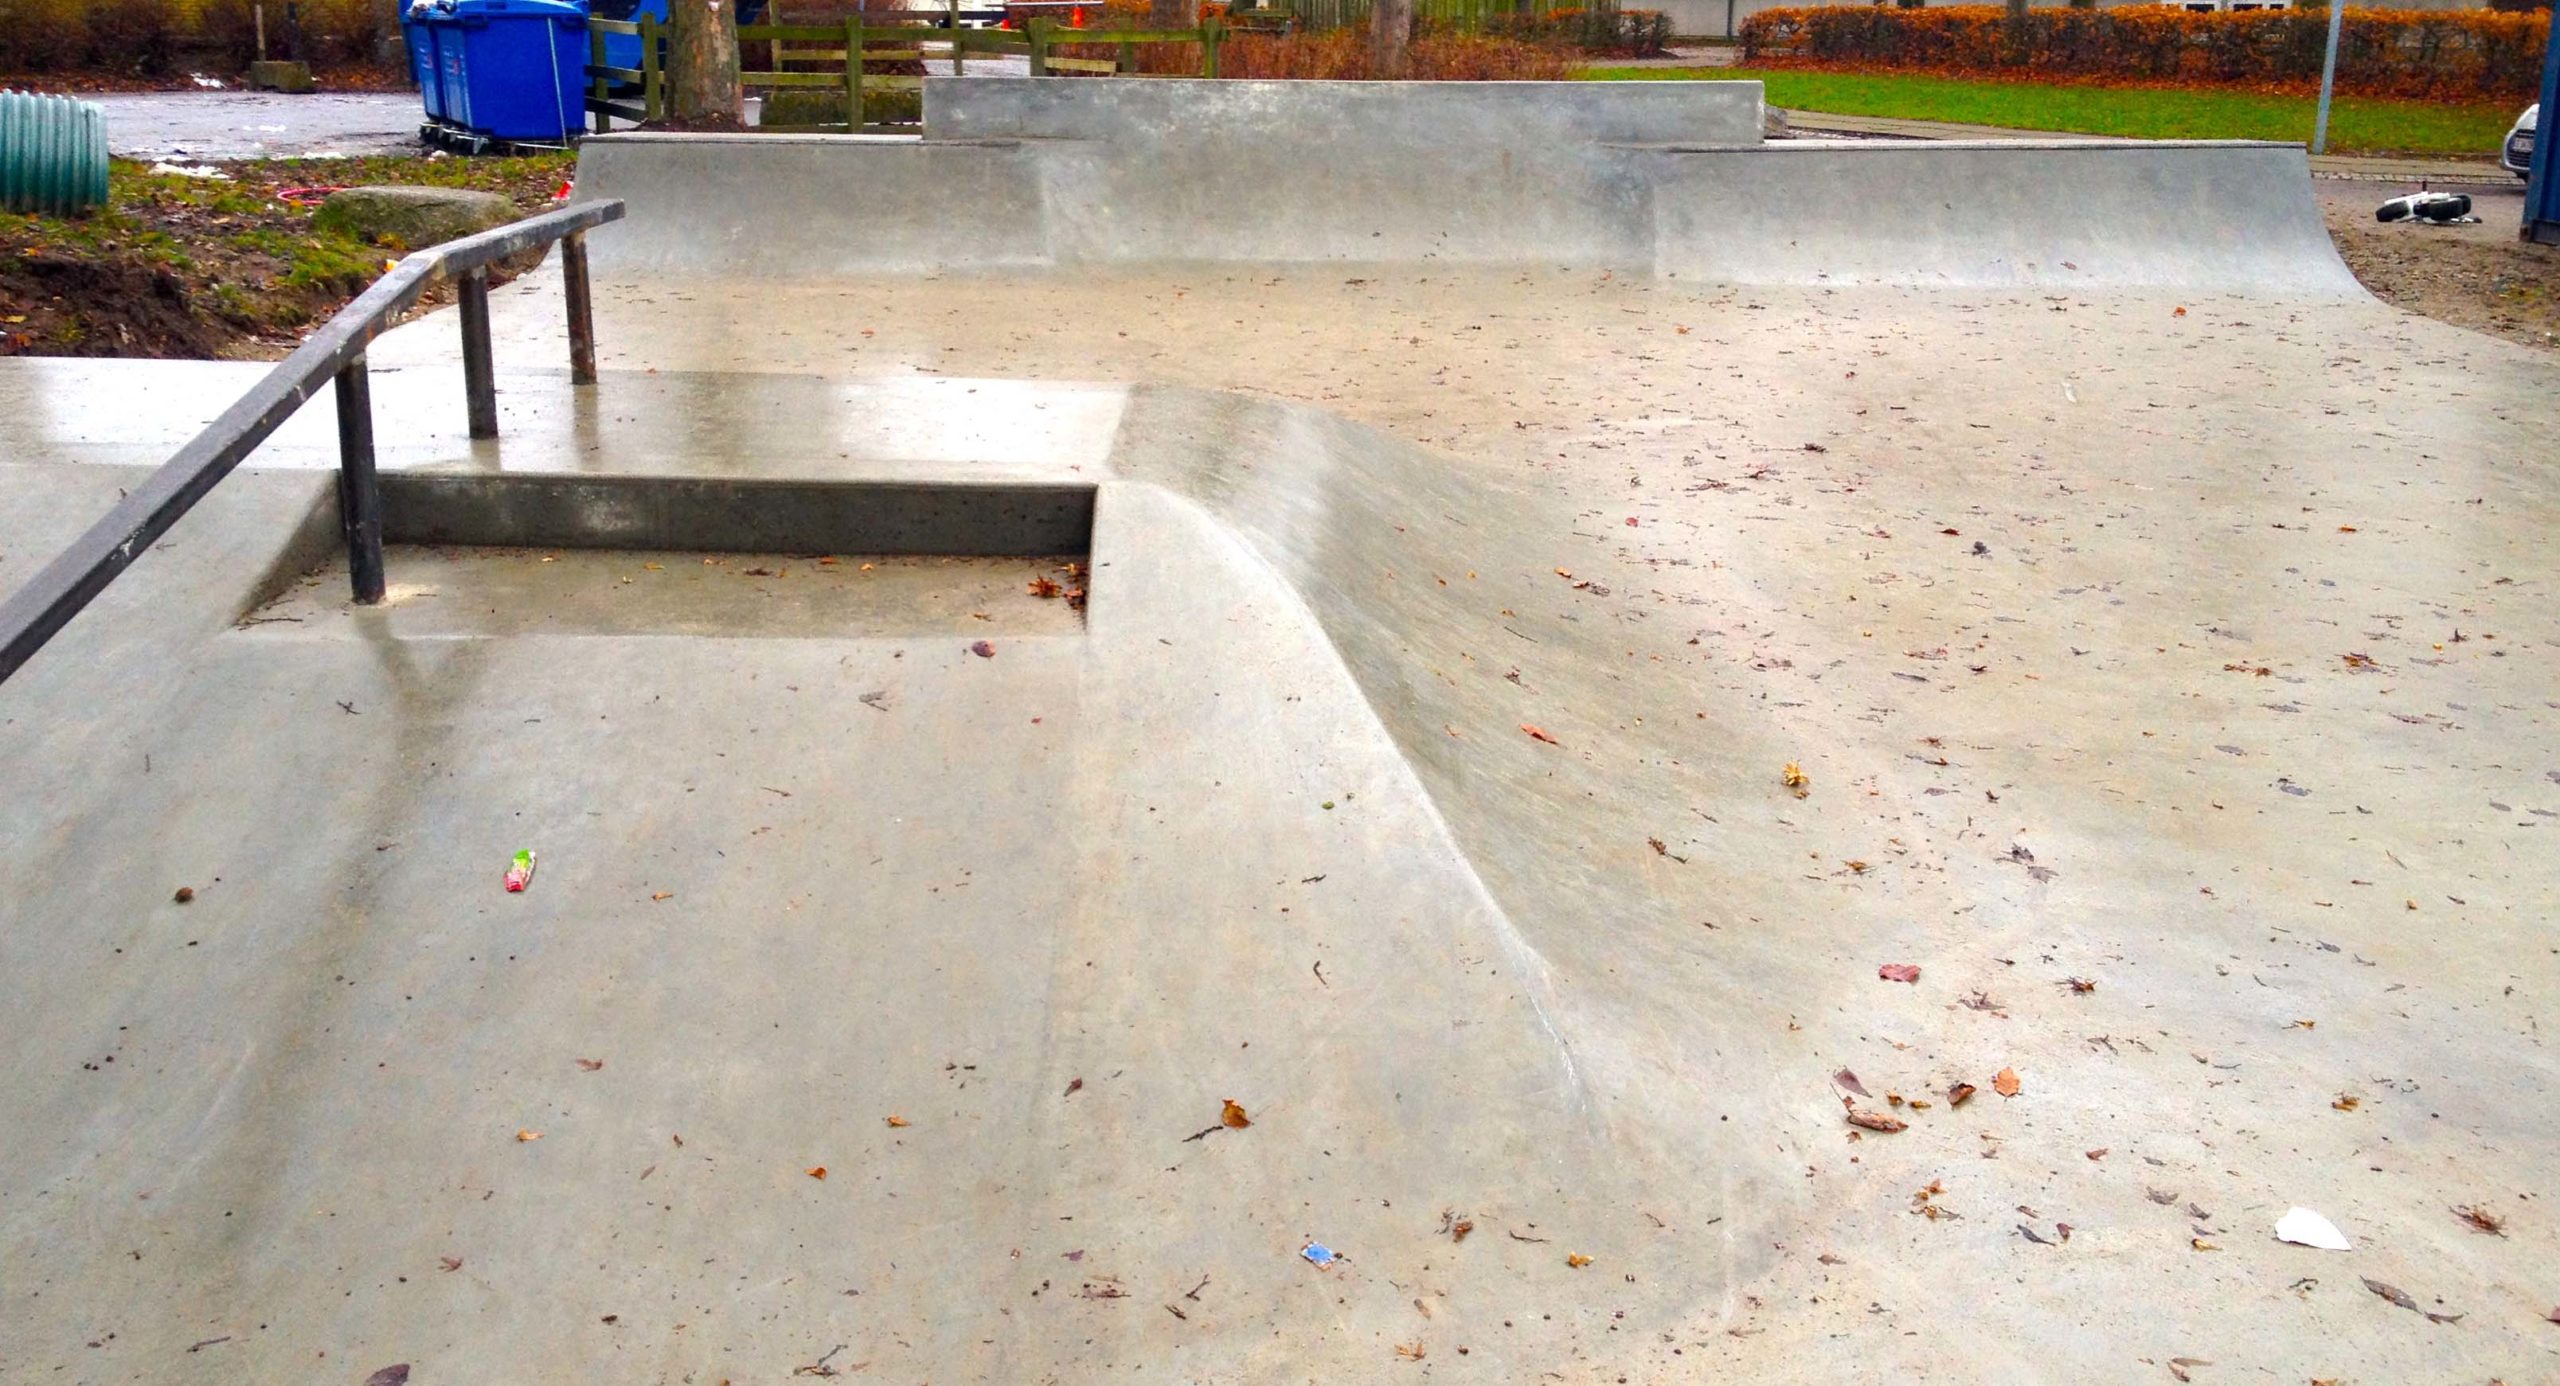 Her ses en skateboardrampe i beton med et metalgelænder på toppen